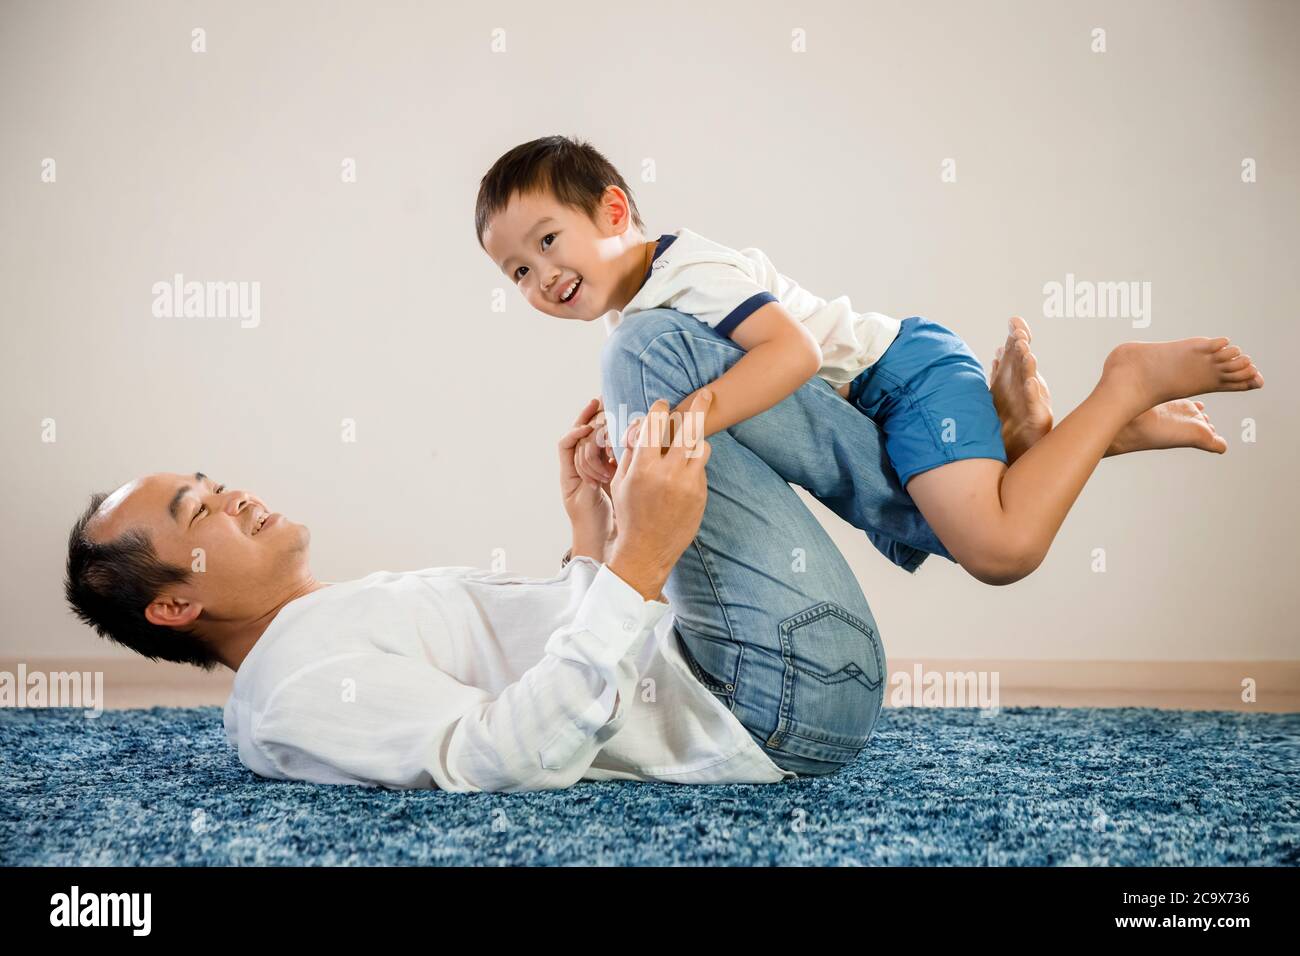 Retrato asiático del padre y el hijo, concepto del día del padre, hombre vietnamita feliz y sonriente sentado en el suelo con su hijo en brazos, orgulloso padre e hijo Foto de stock